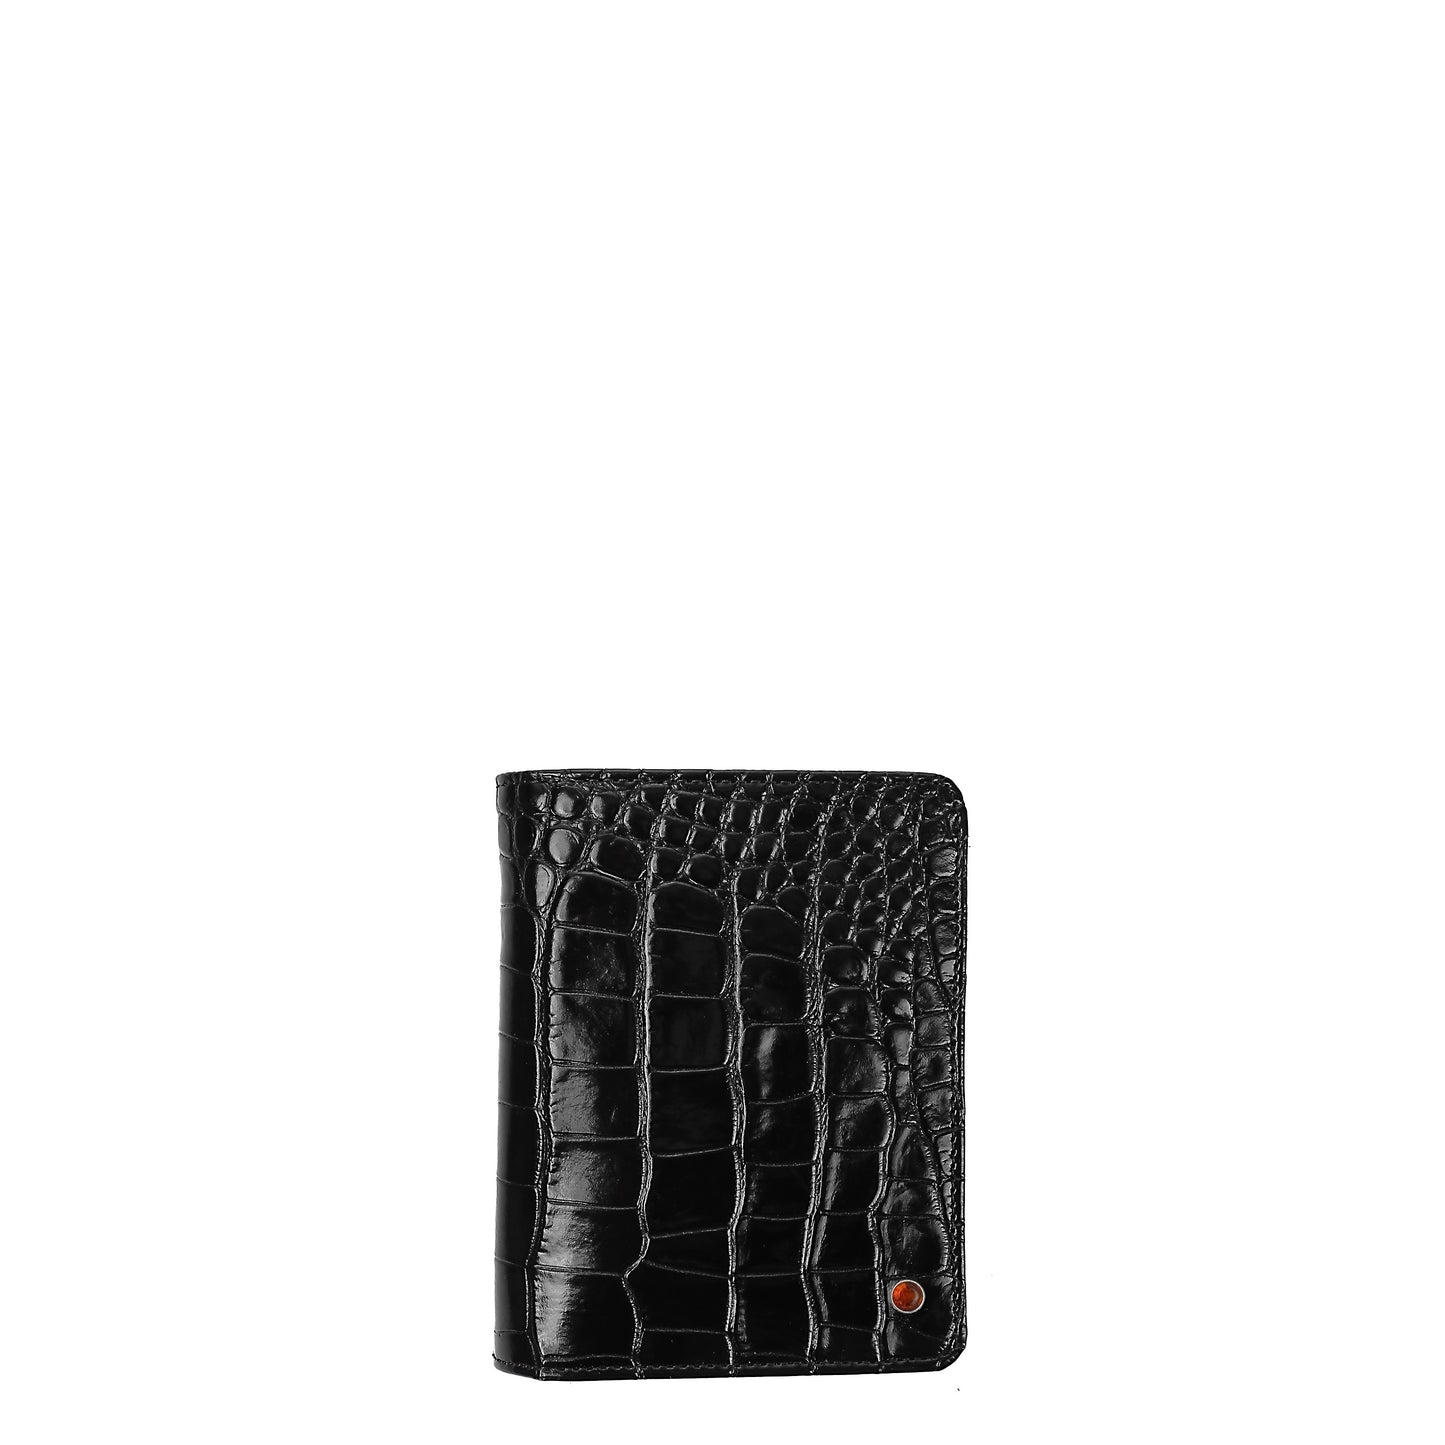 Croco black leather men's wallet